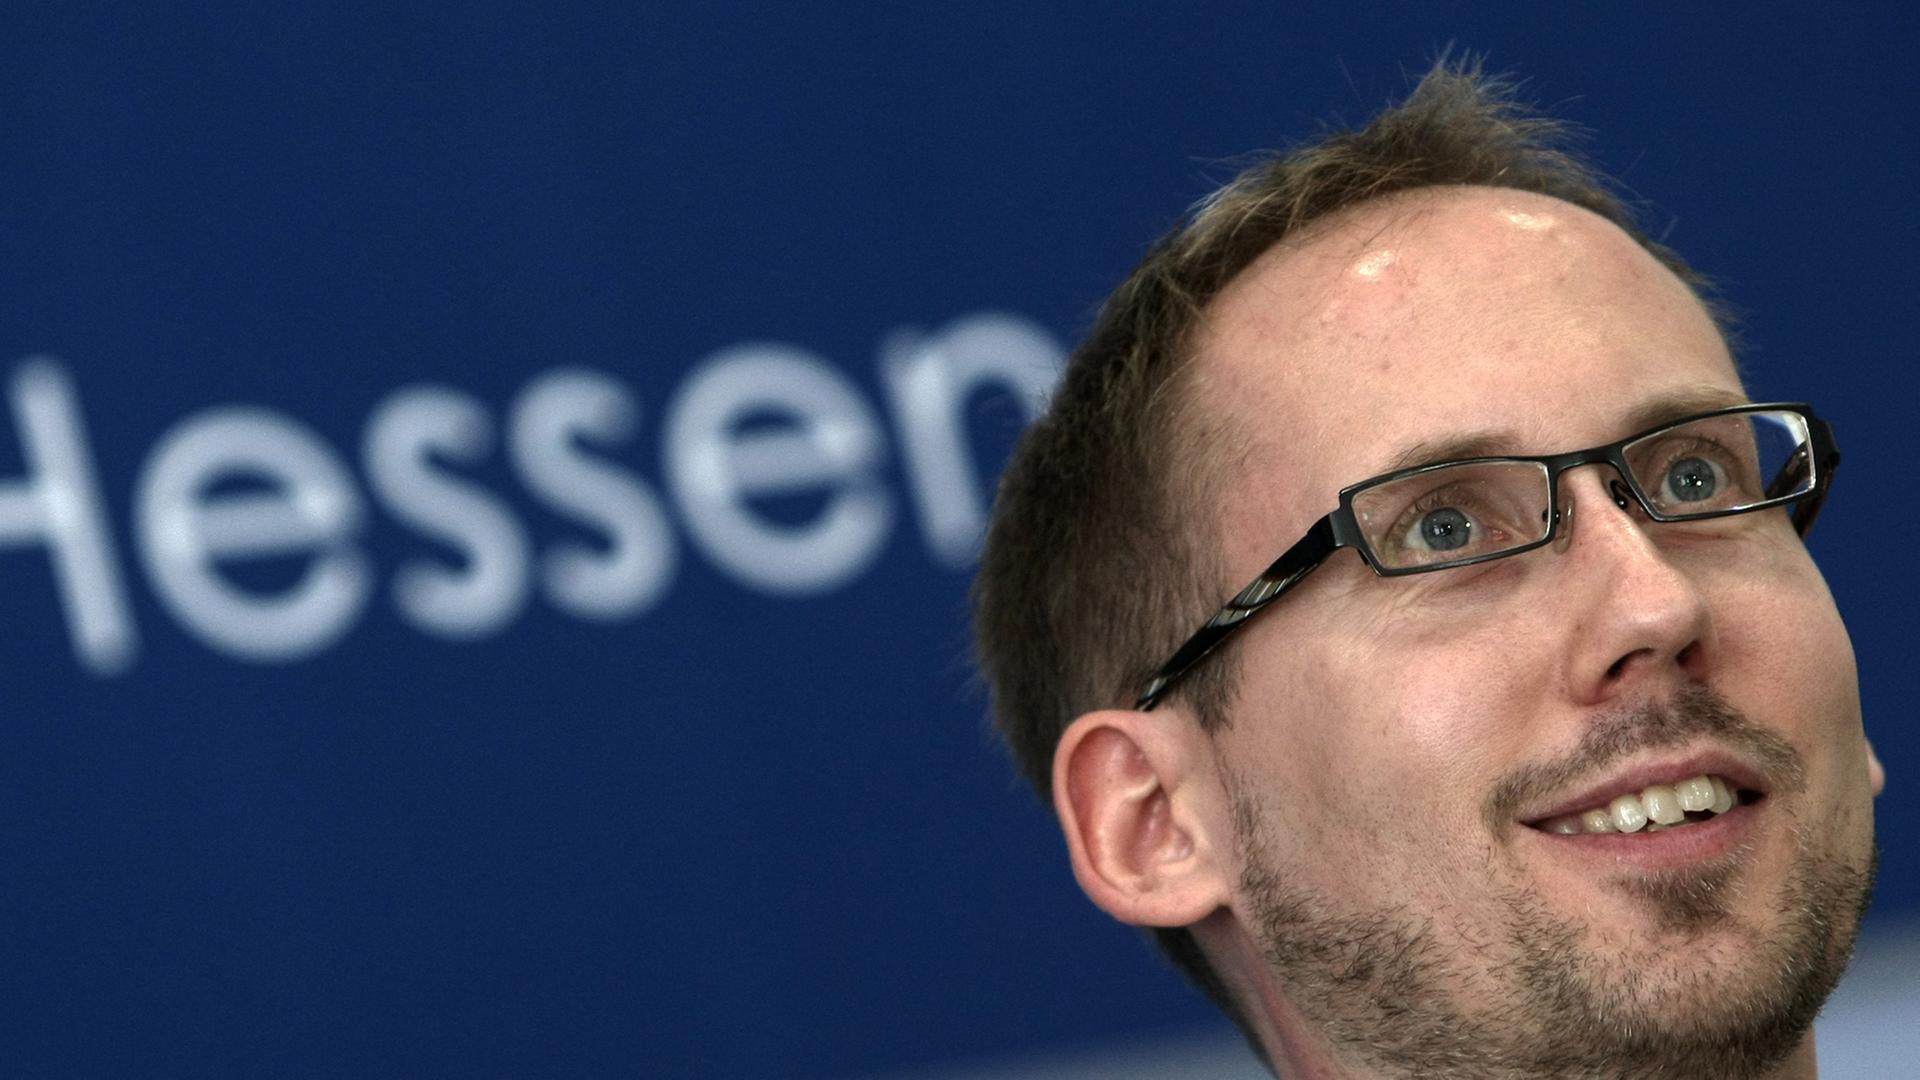 Kai Klose, der Landesvorsitzender der hessischen Grünen, in einem Raum vor dem Schriftzug "Hessen"